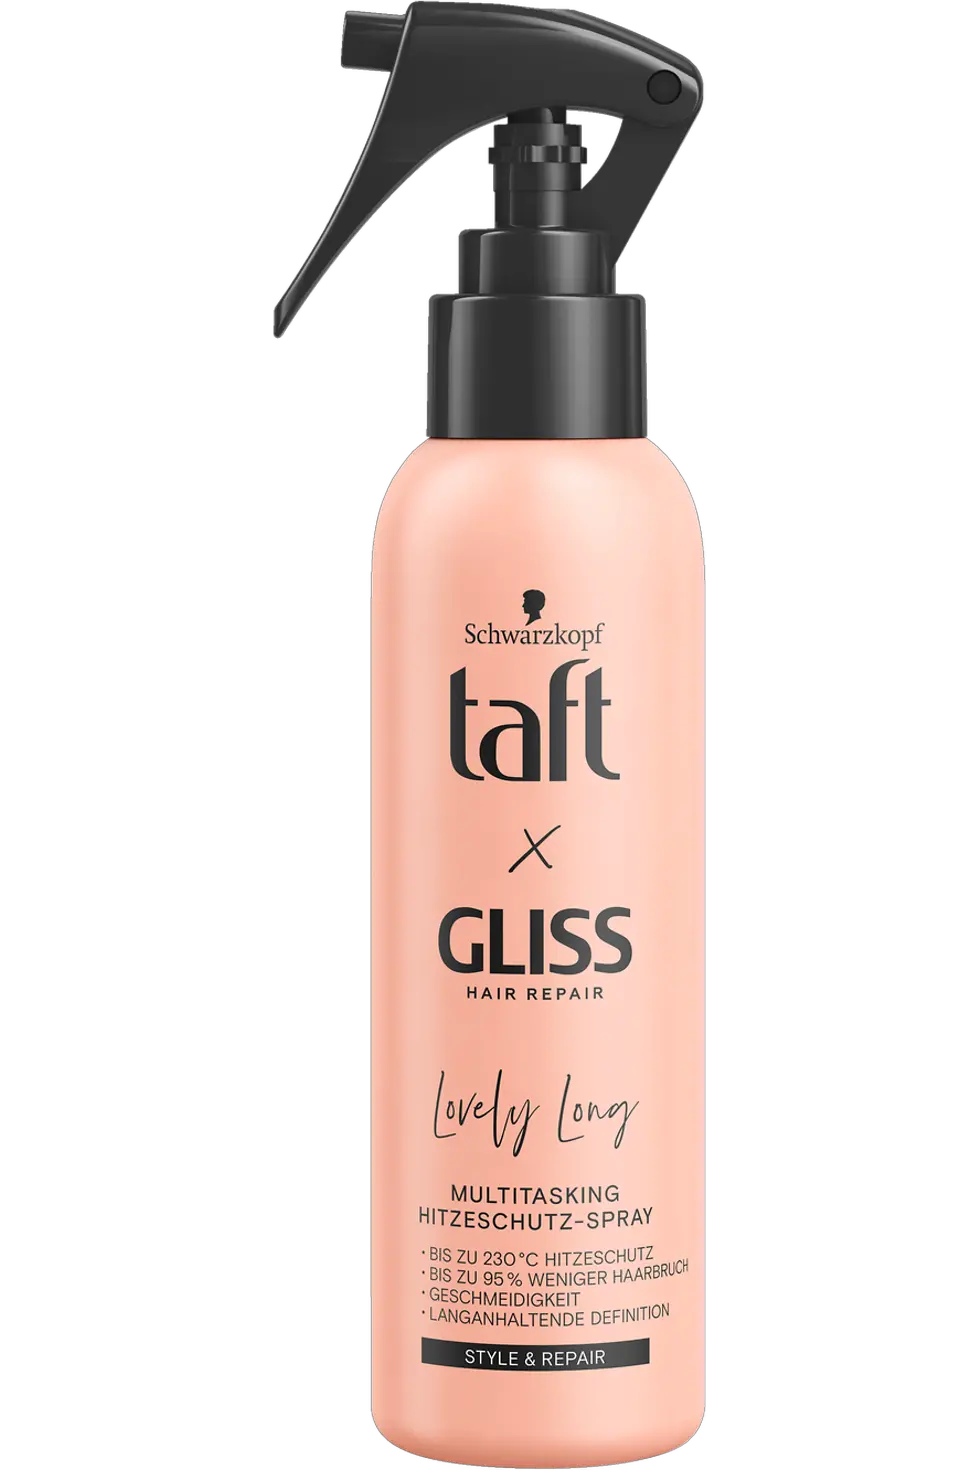 
Taft x Gliss Lovely Long Multitasking Hitzeschutz-Spray